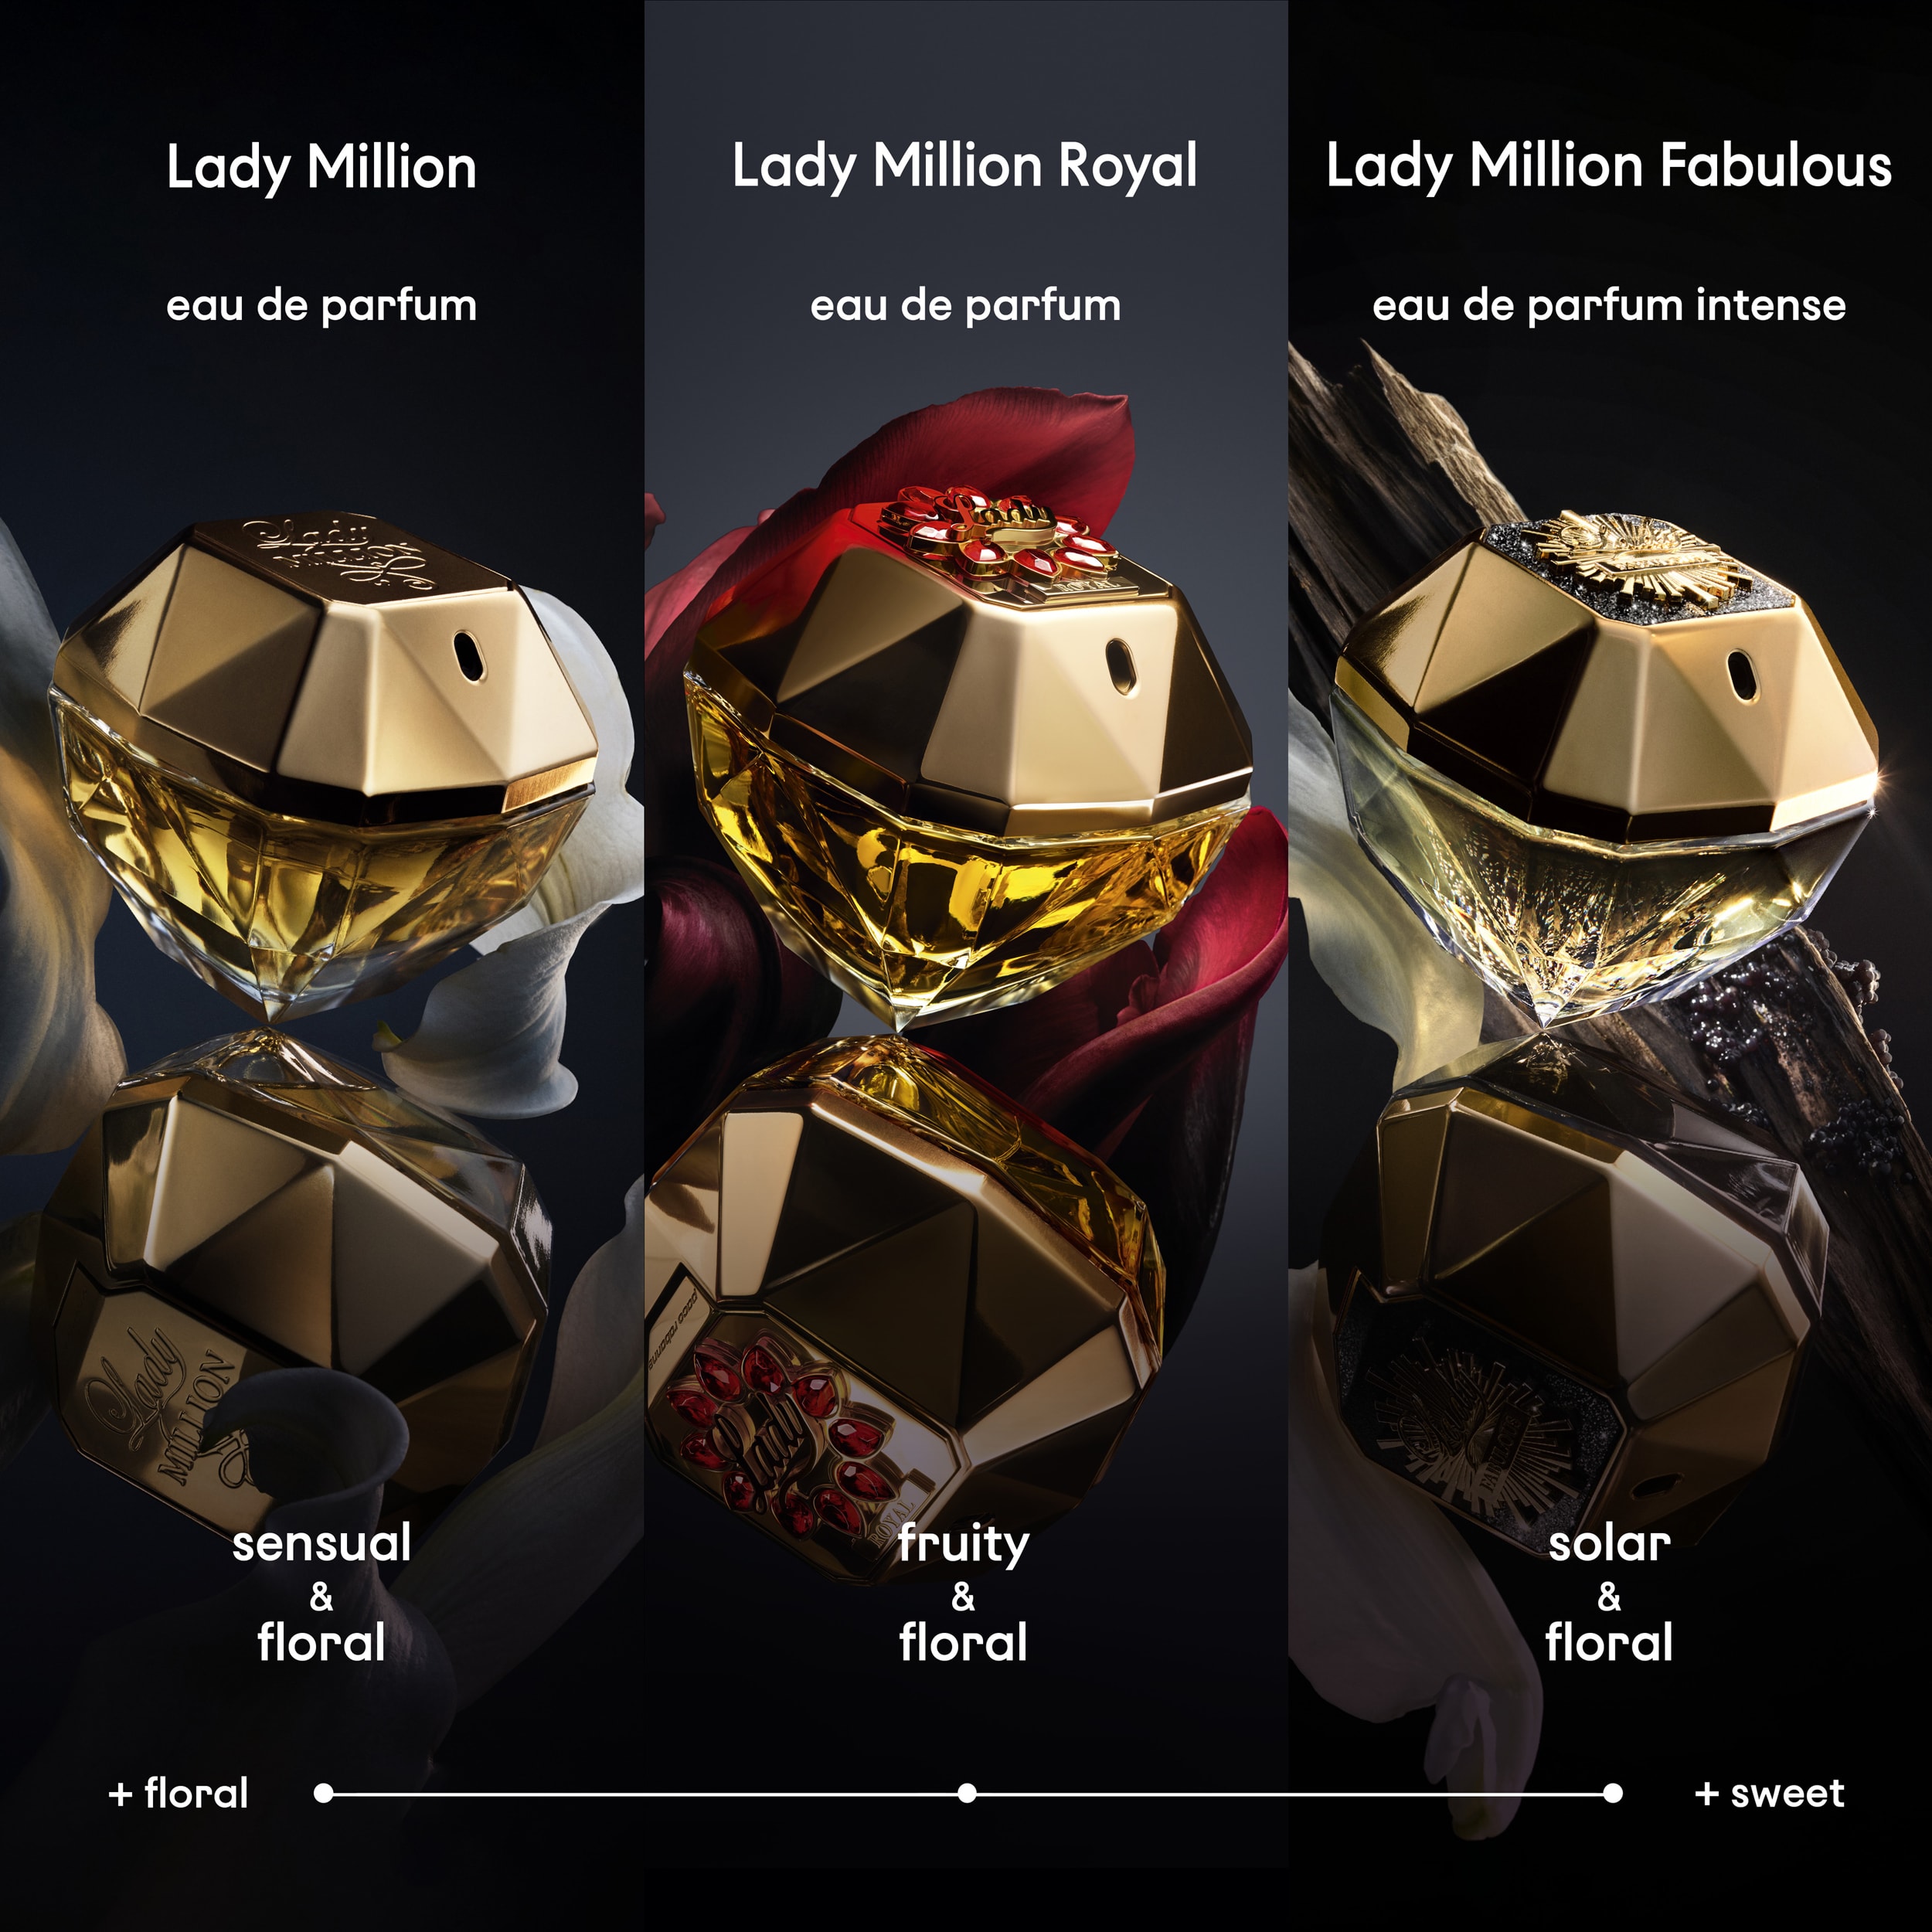 Lady Million Royal Eau De Parfum